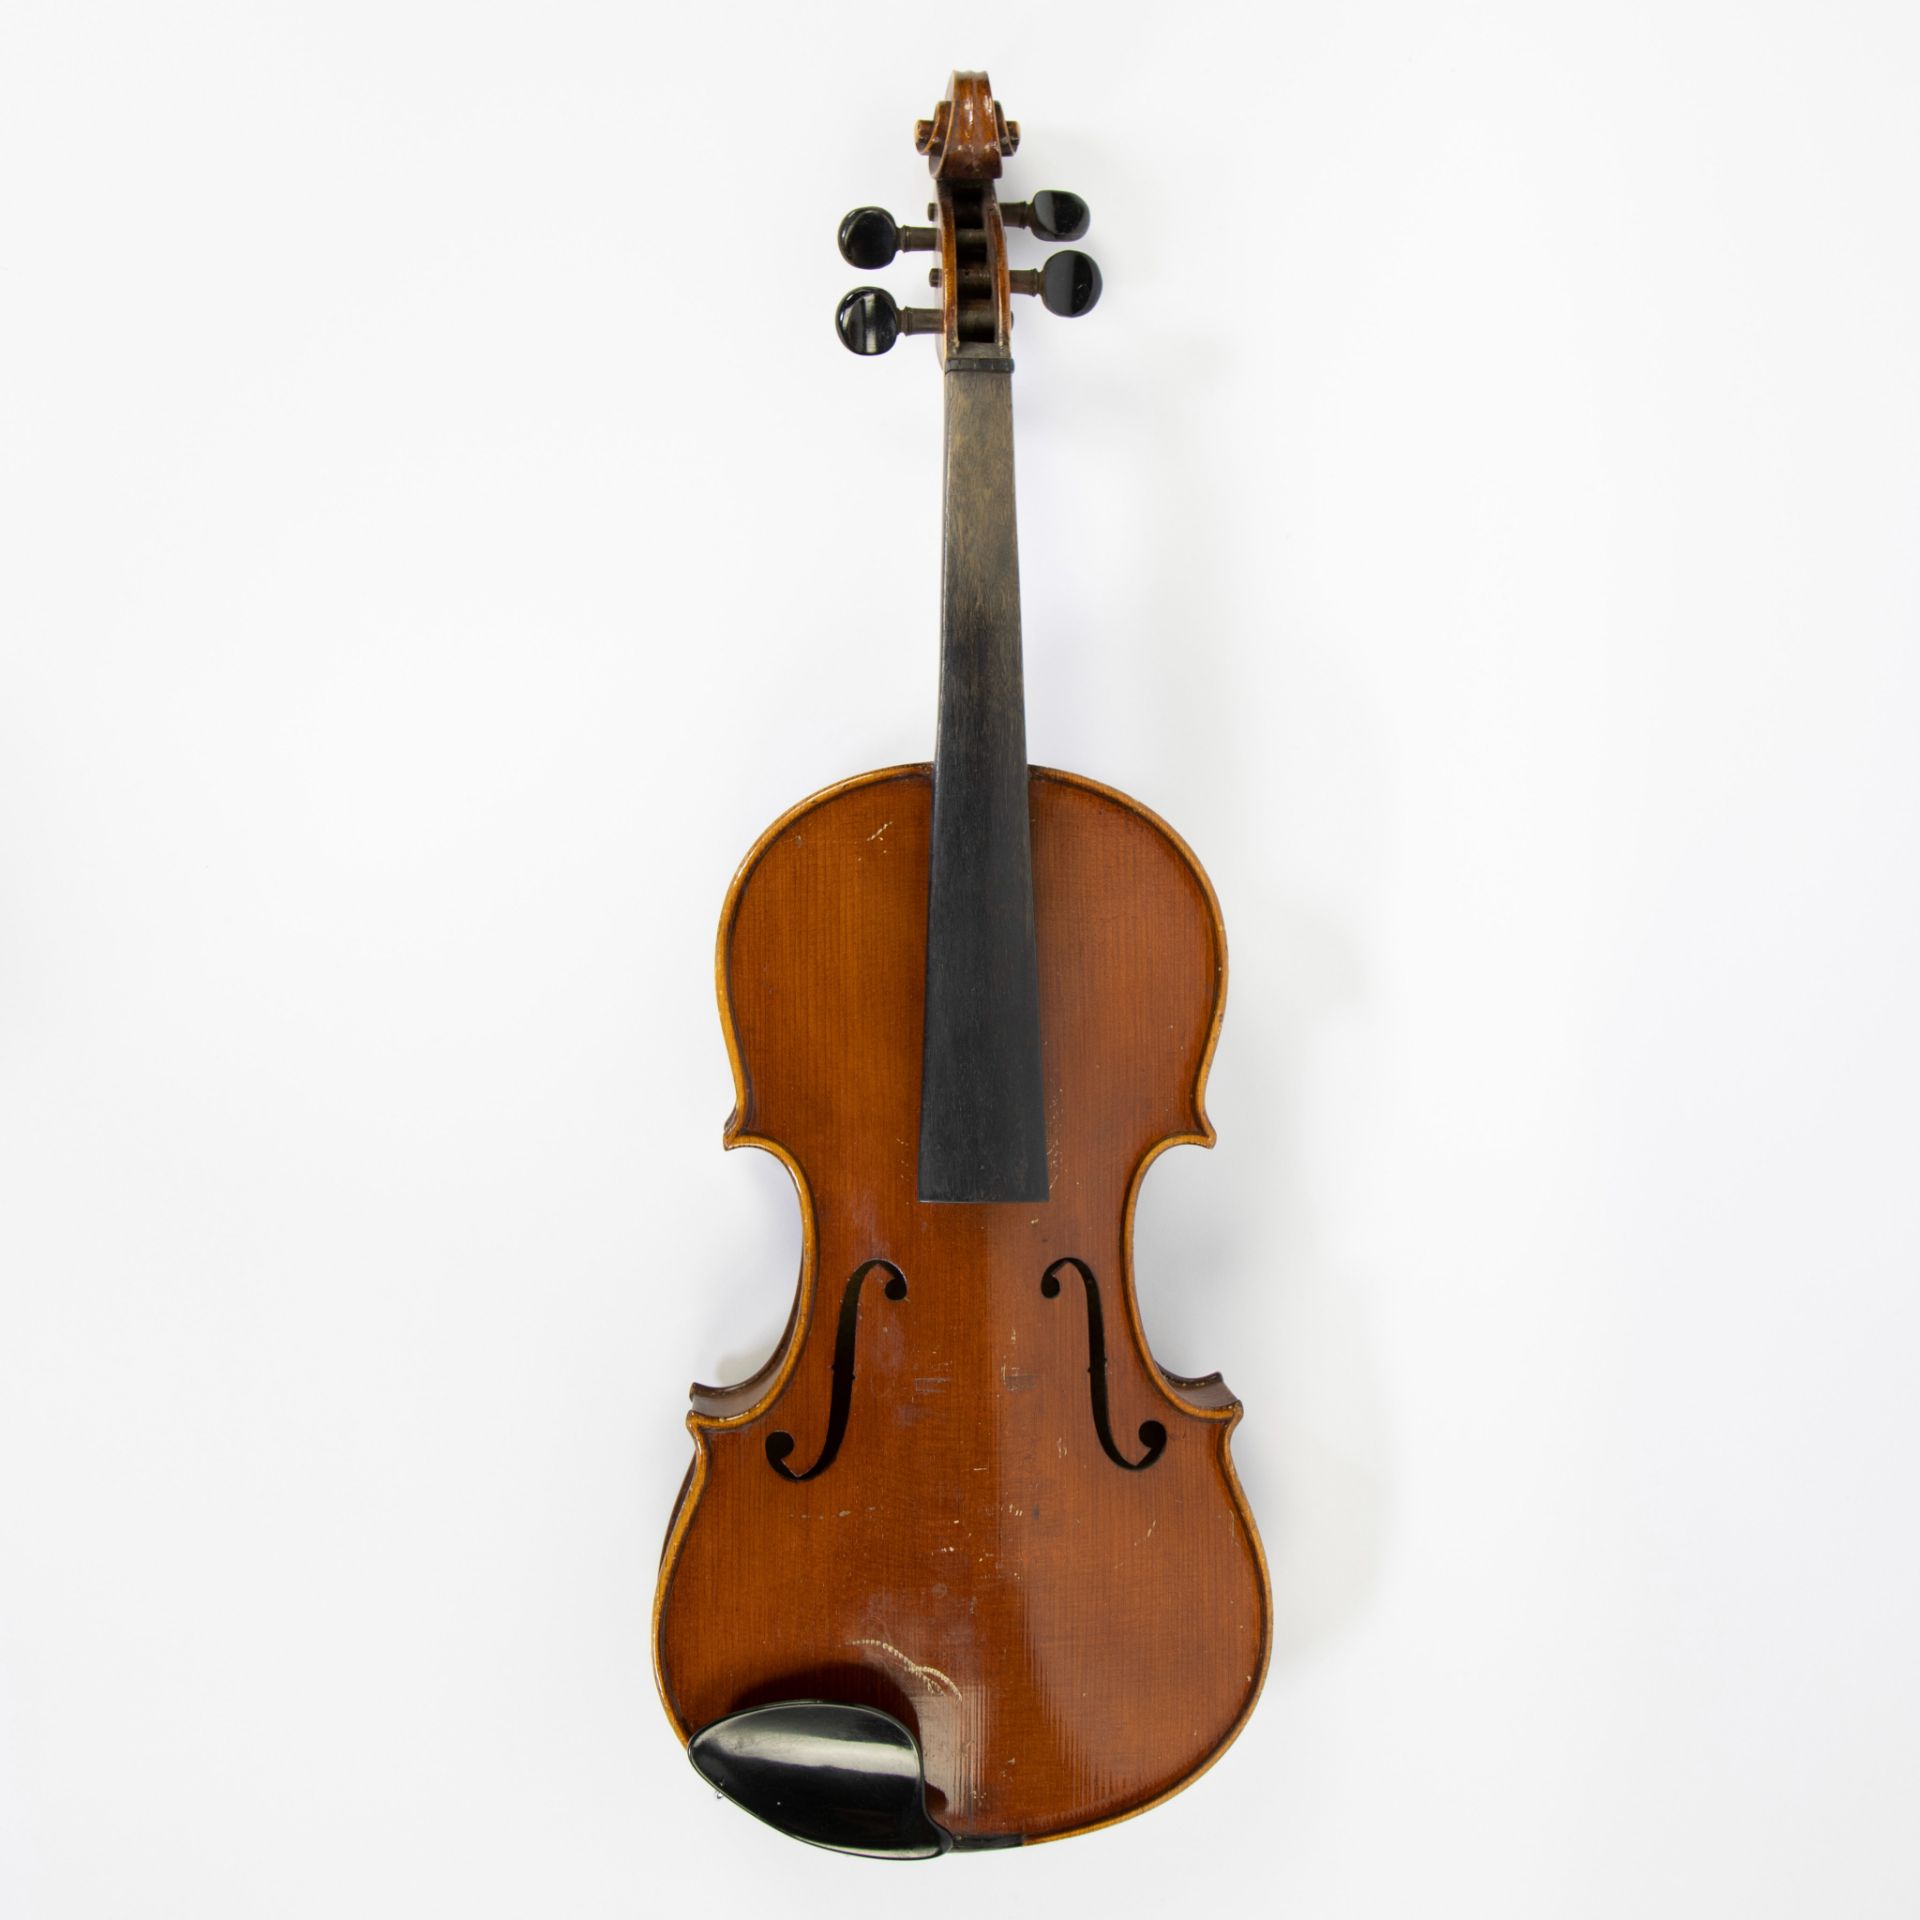 Violin no label, 361mm, wooden case